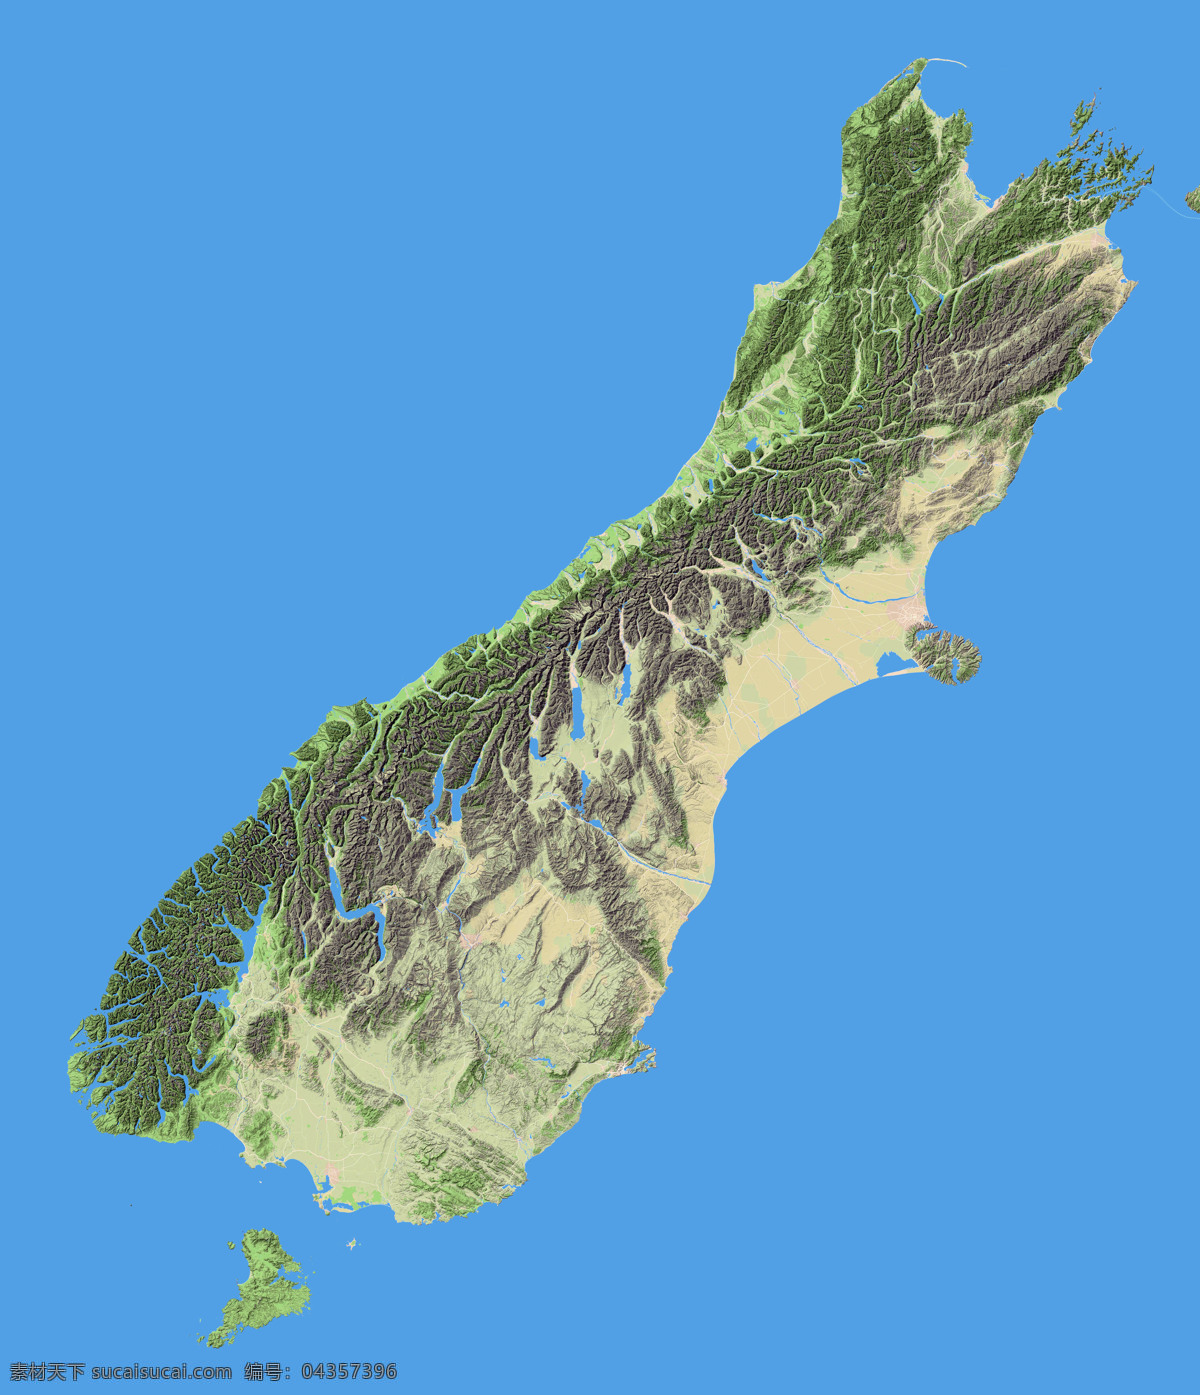 新西兰 南岛 地形图 欧洲 上帝之眼 卫星图 俯视图 nasa 地中海 海洋 山地 西西里岛 撒丁岛 阿尔卑斯山 南欧 东欧 地球 自然景观 自然风景